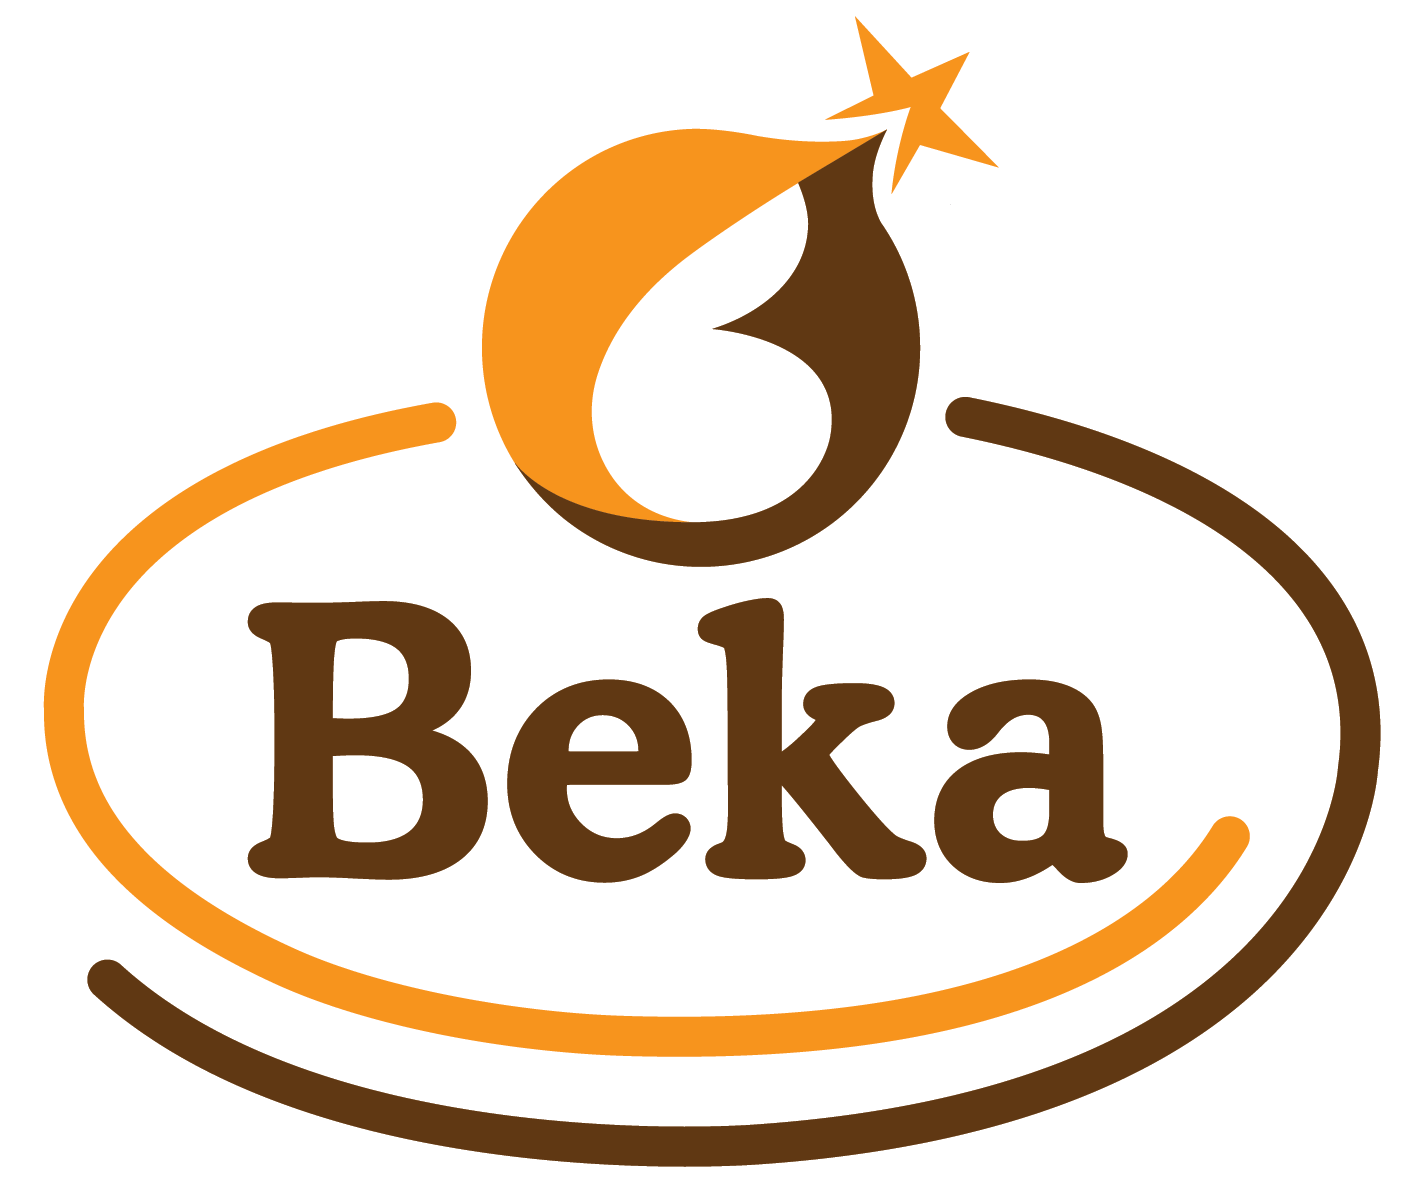 - Serve Business General Beka The